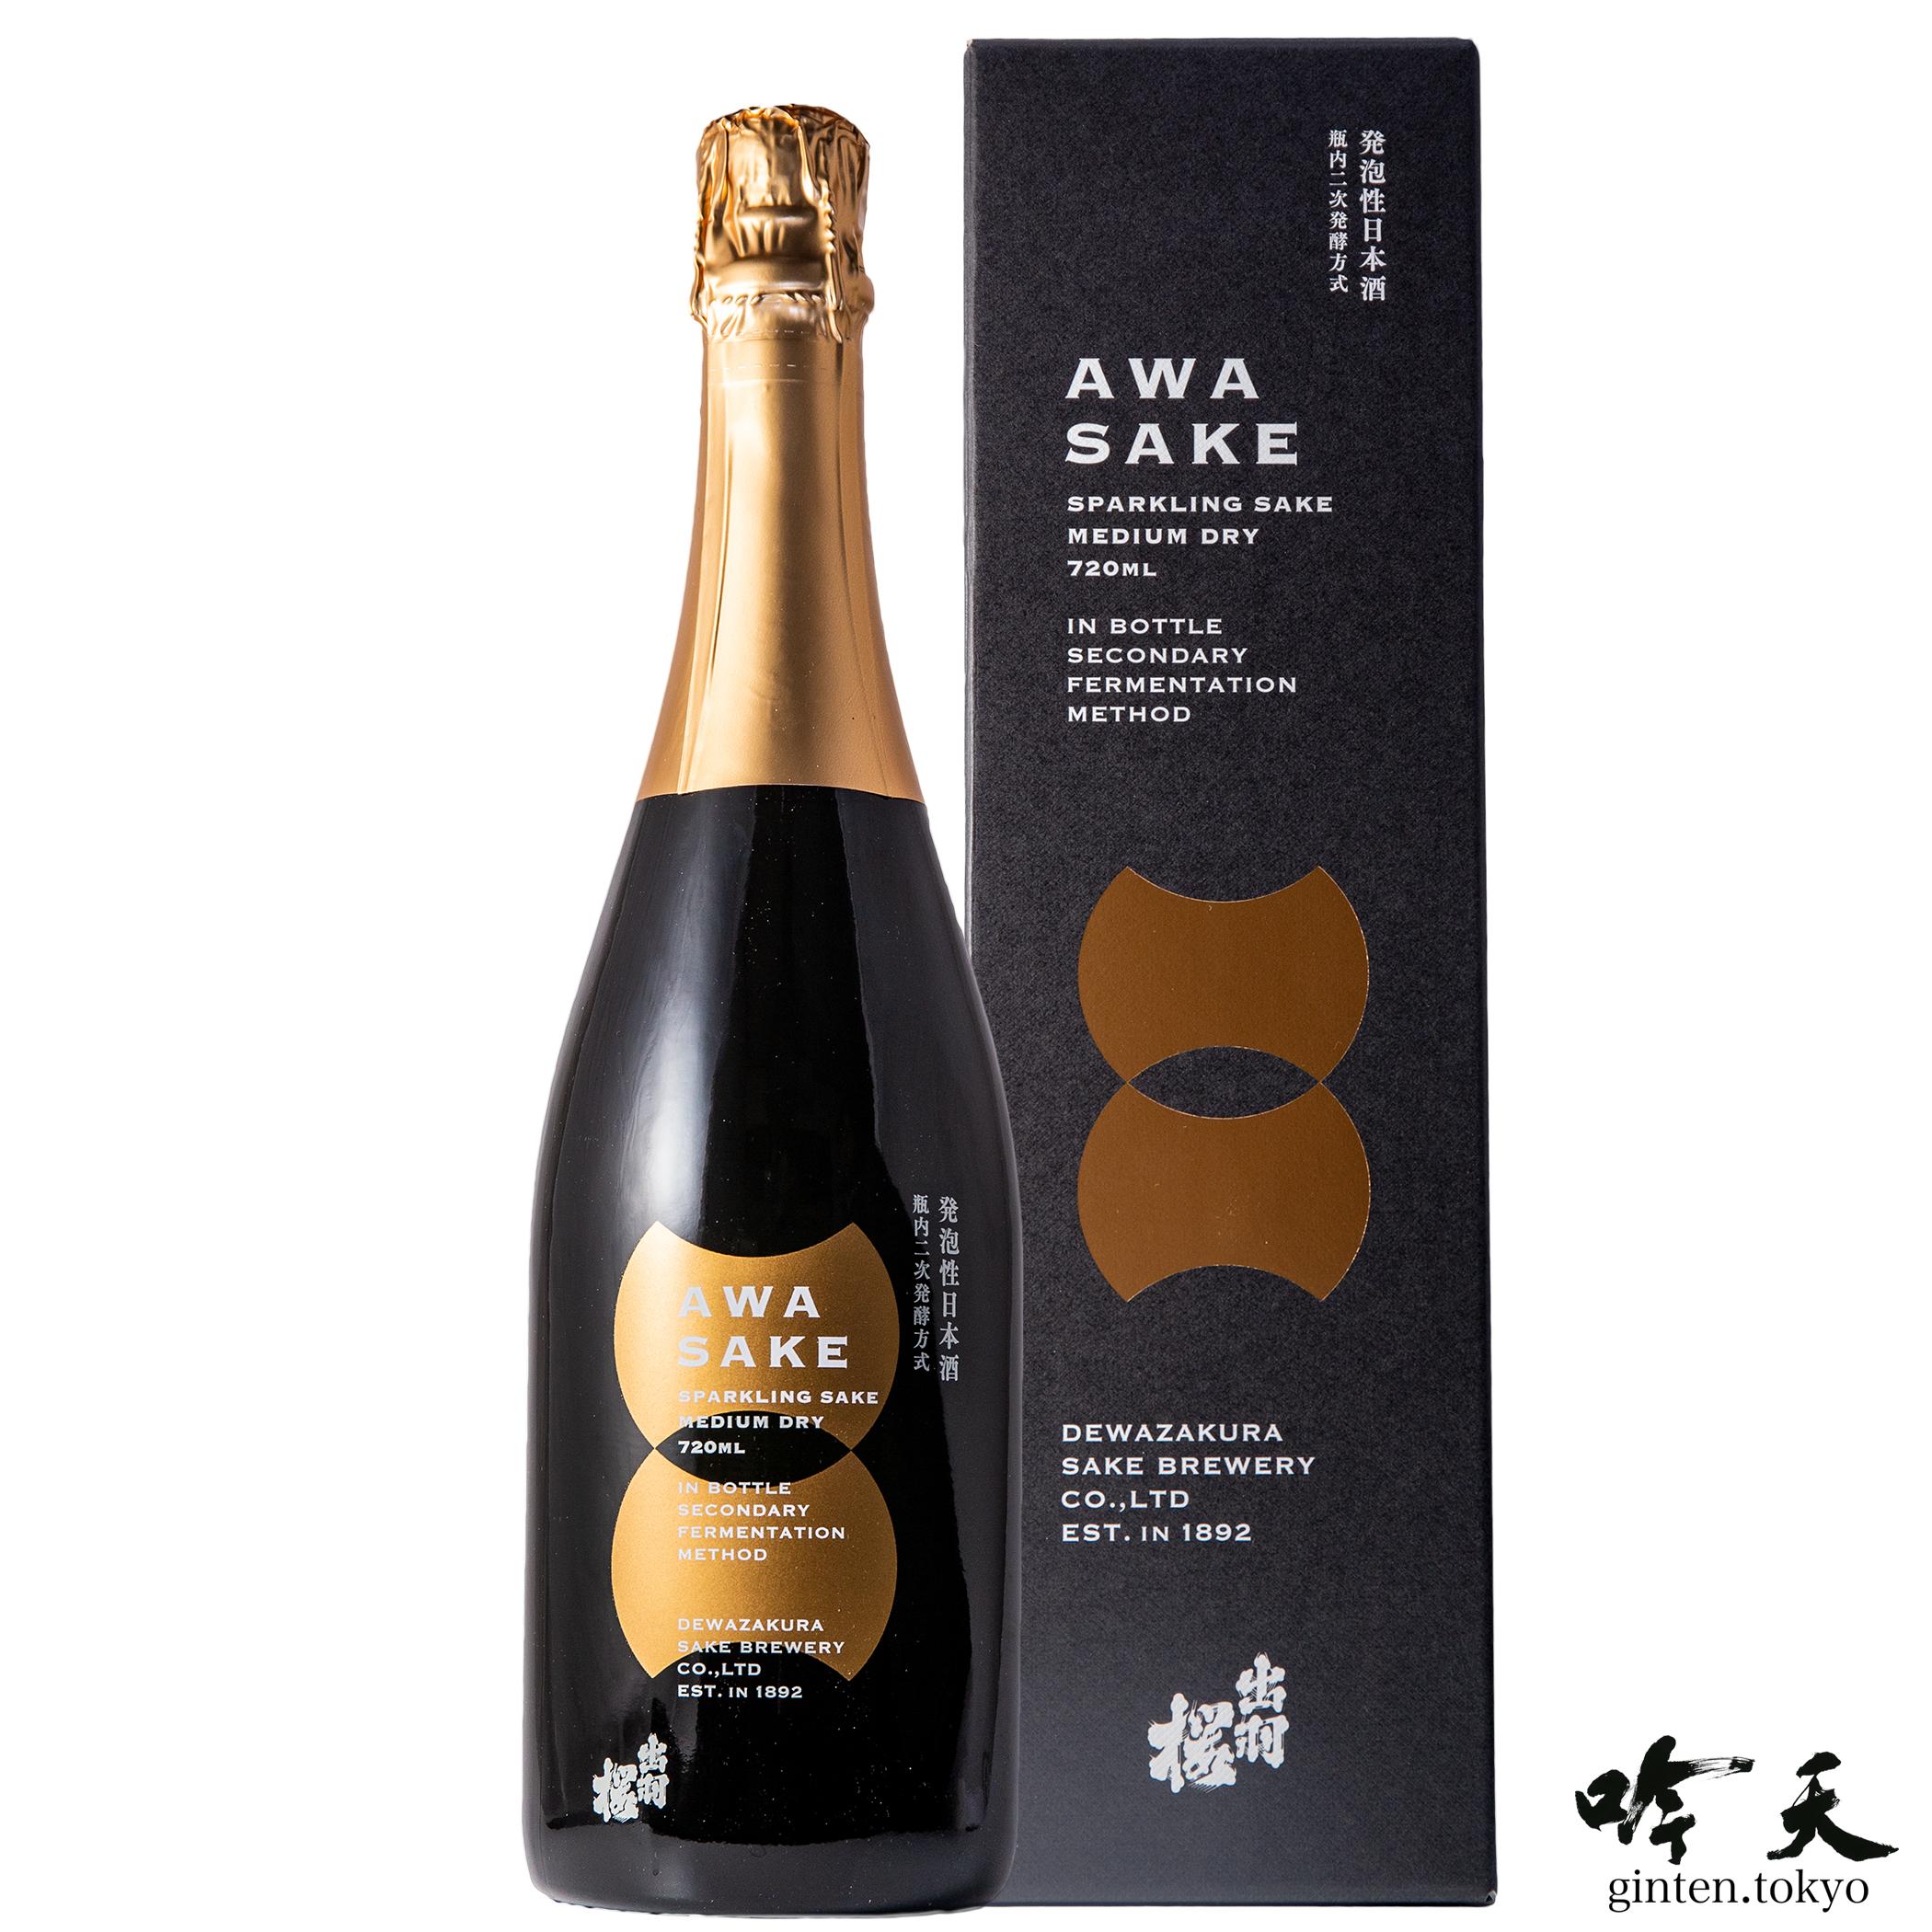 出羽桜 awasake化粧箱入り awa酒 (720ml)